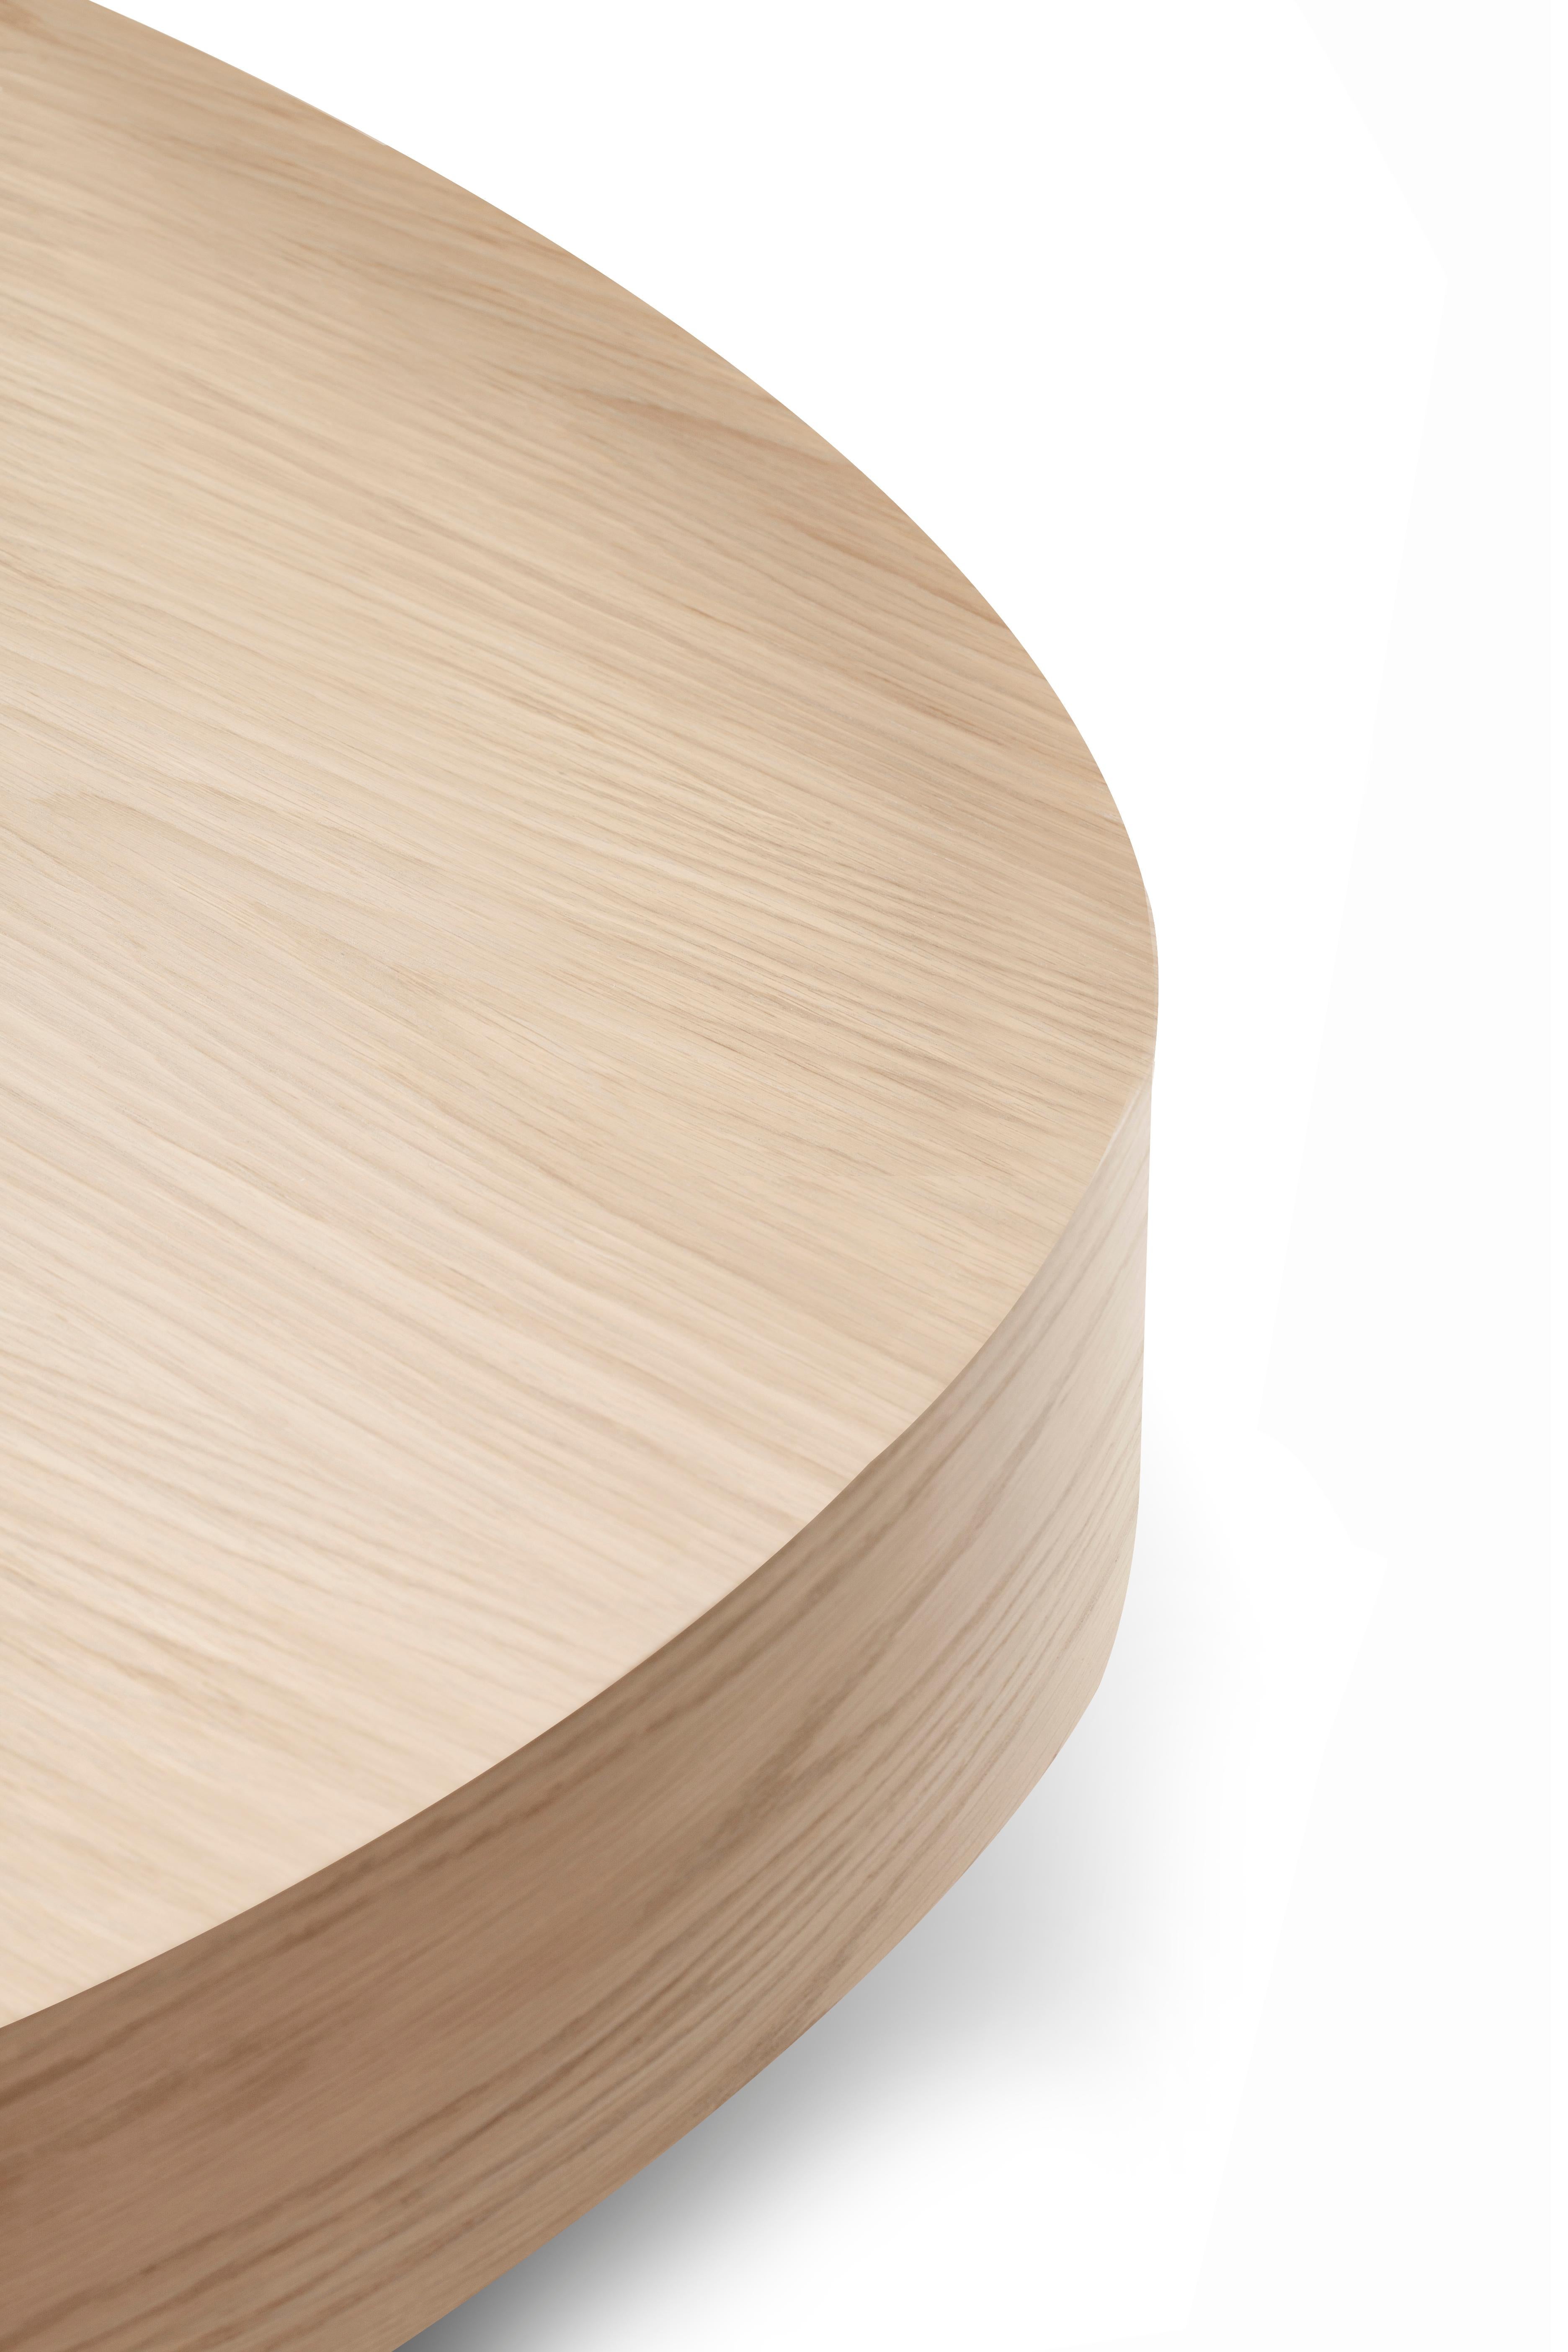 Mesa centro Bassa de madera de roble by Collector Studio

Es como tener un enorme bloque de madera de roble. Esta mesa de roble no sólo tendrá un aspecto precioso, sino también una sensación increíble, ya que está acabada con un acabado liso que